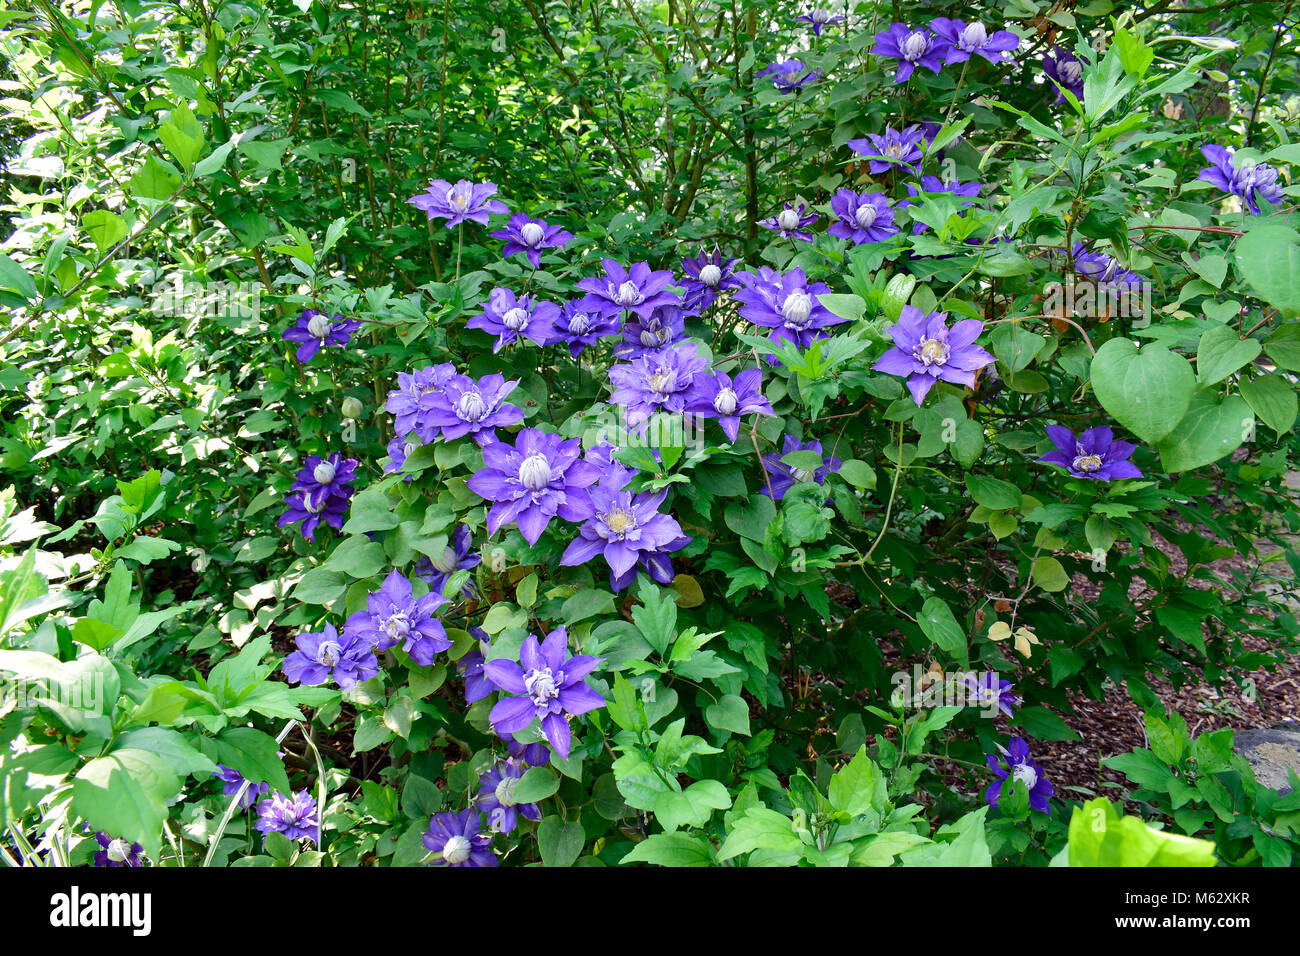 Schönen violetten Clematis blühen, Frühling Blumen und Natur Hintergrund, grüne Blätter, Chlorophyll mit Sonnenschein, gutes Wetter in der Sommersaison. Stockfoto